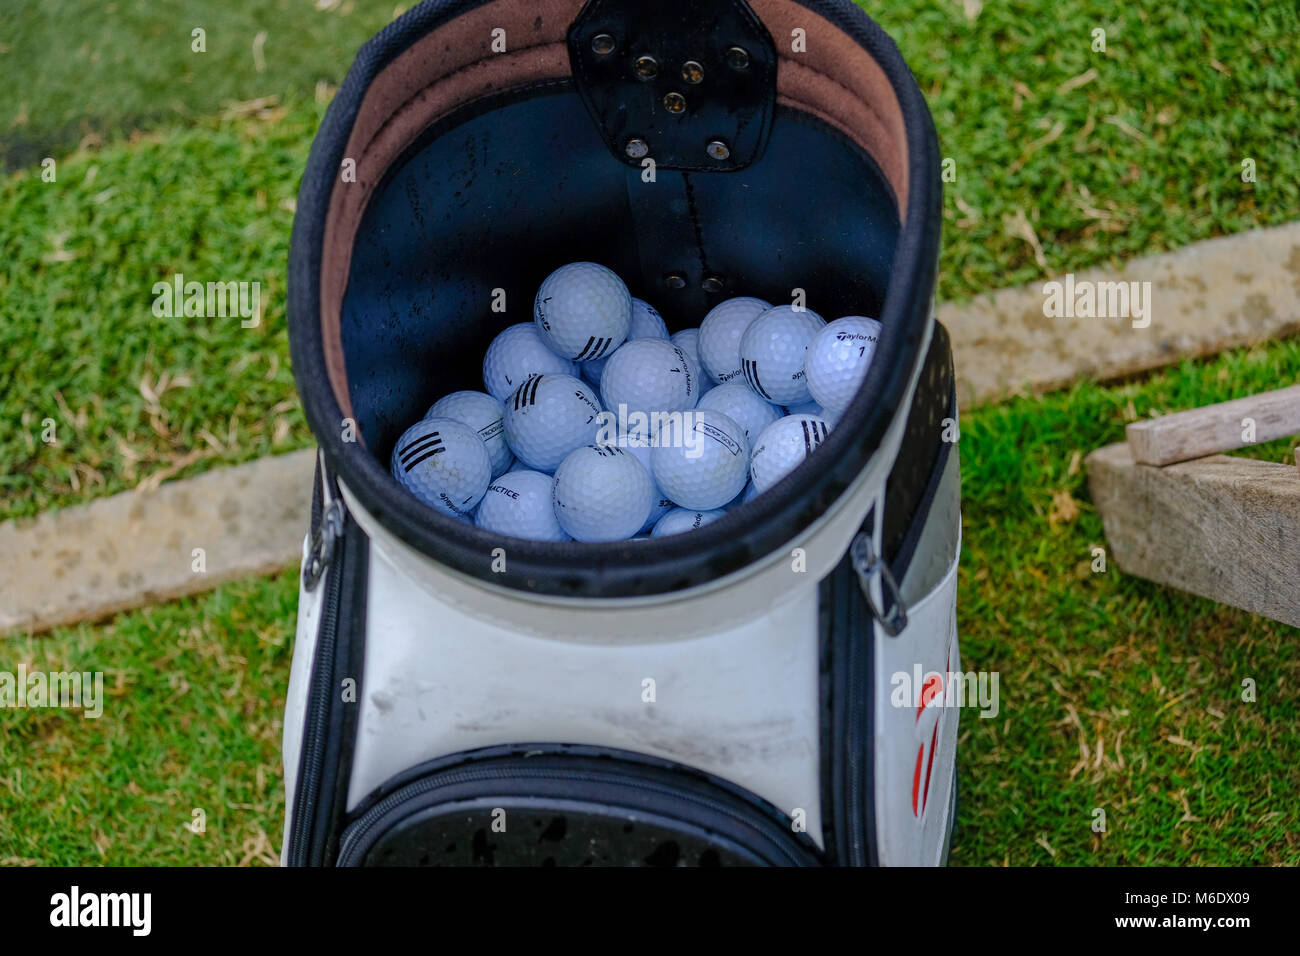 Golf balls bag -Fotos und -Bildmaterial in hoher Auflösung – Alamy